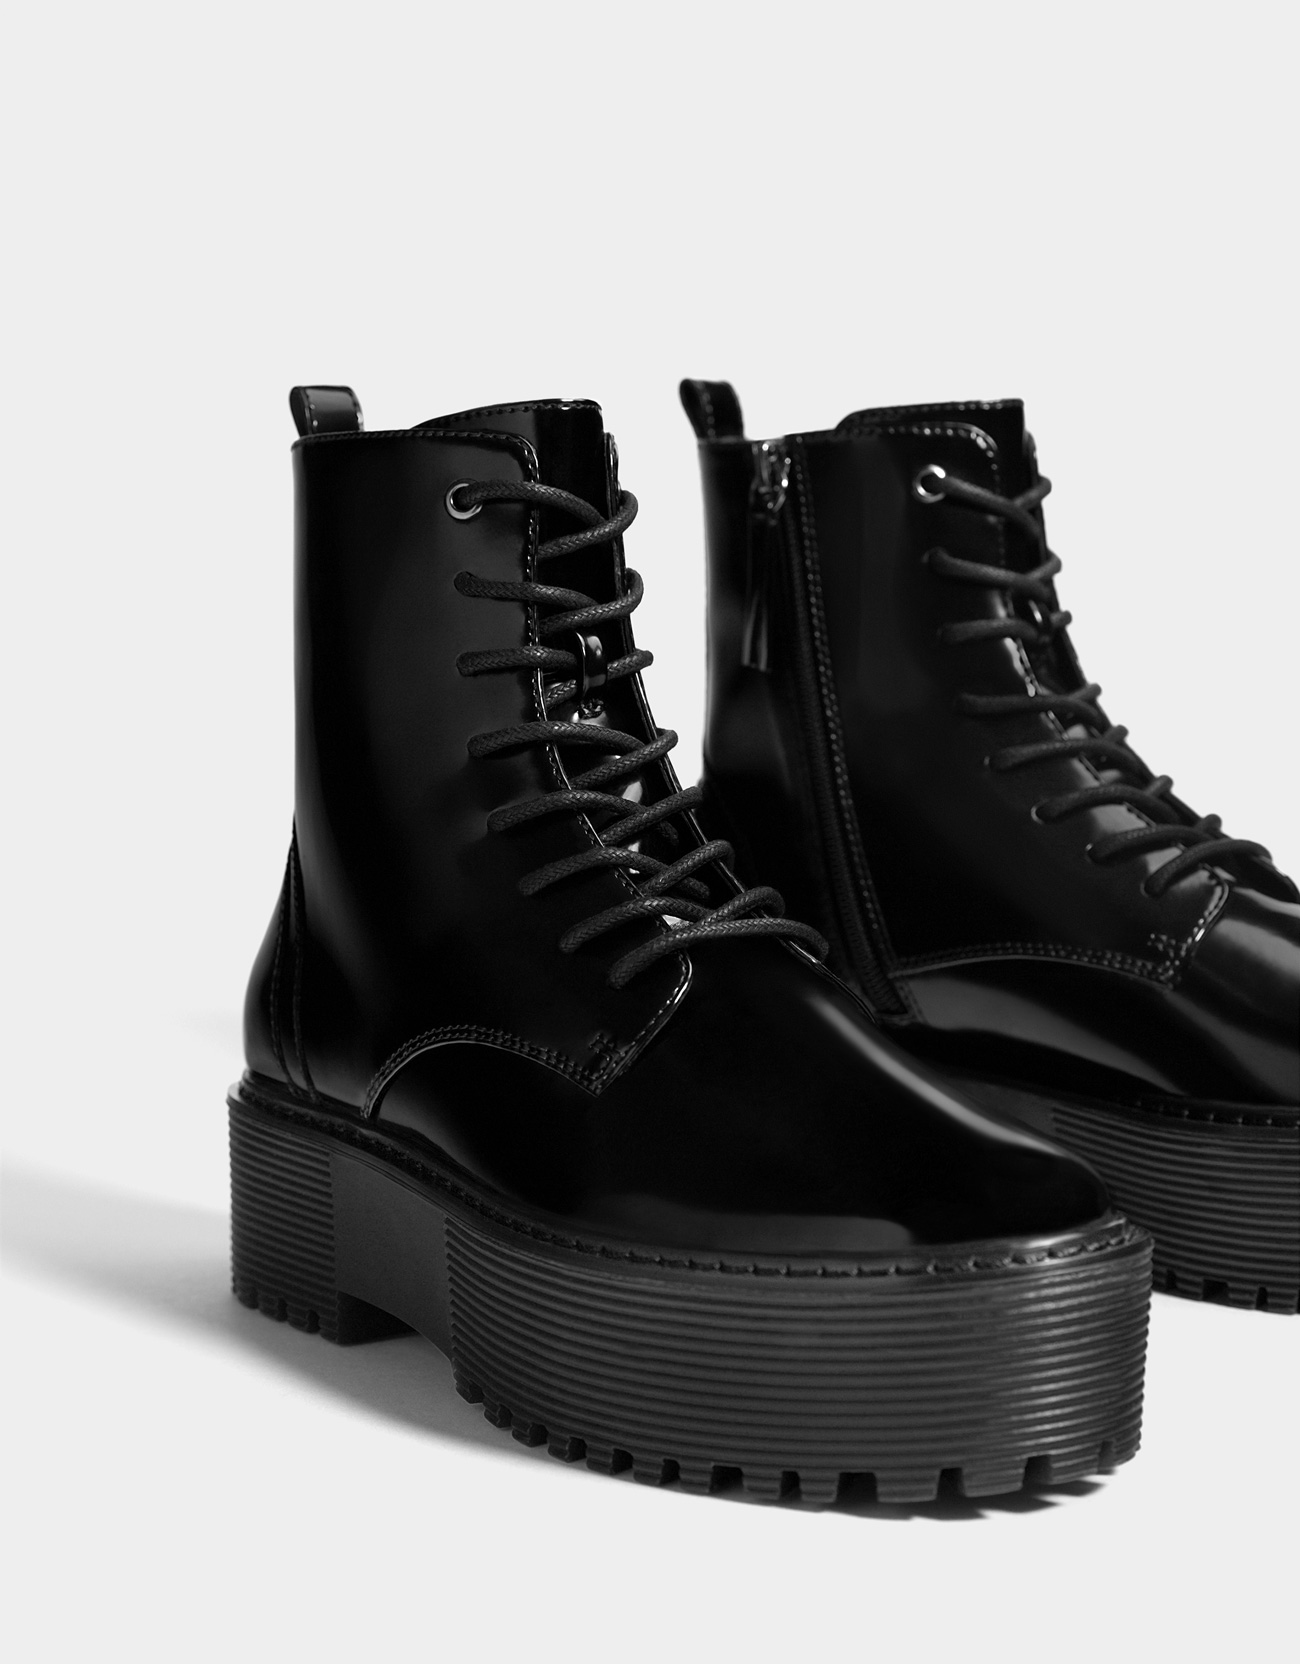 Ботинки с большой подошвой. Берцы Bershka. Черные ботинки бершка. Черные ботинки бершка мужские. Бершка ботинки на платформе Ankle Boots.